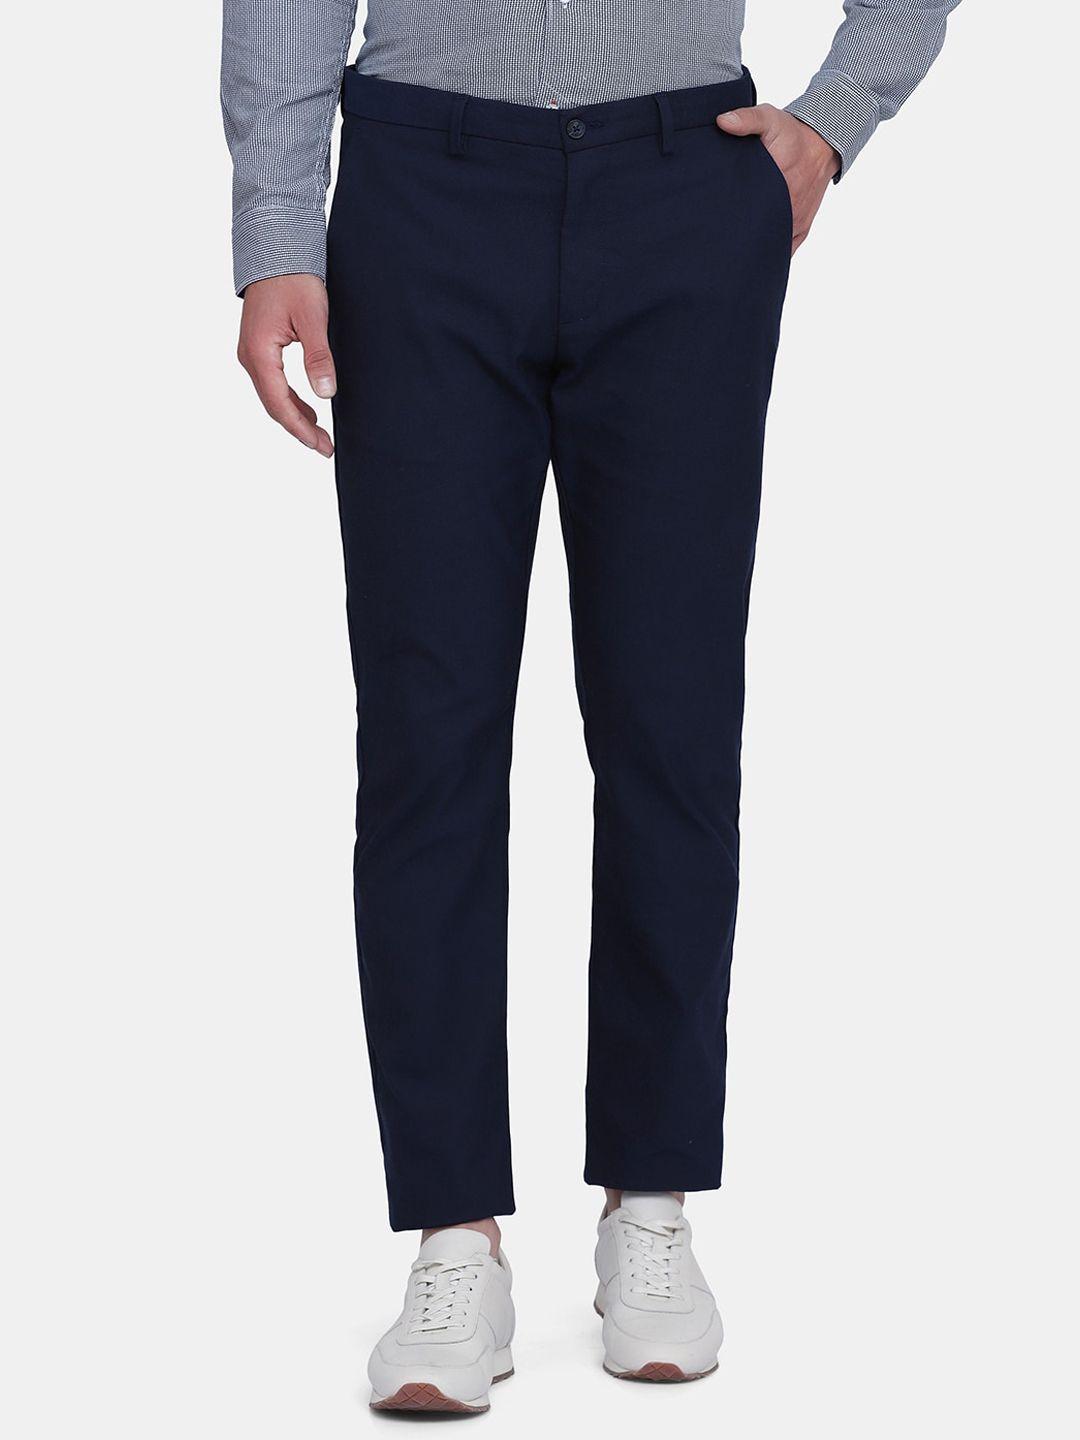 blackberrys-men-navy-blue-b-95-slim-fit-trousers